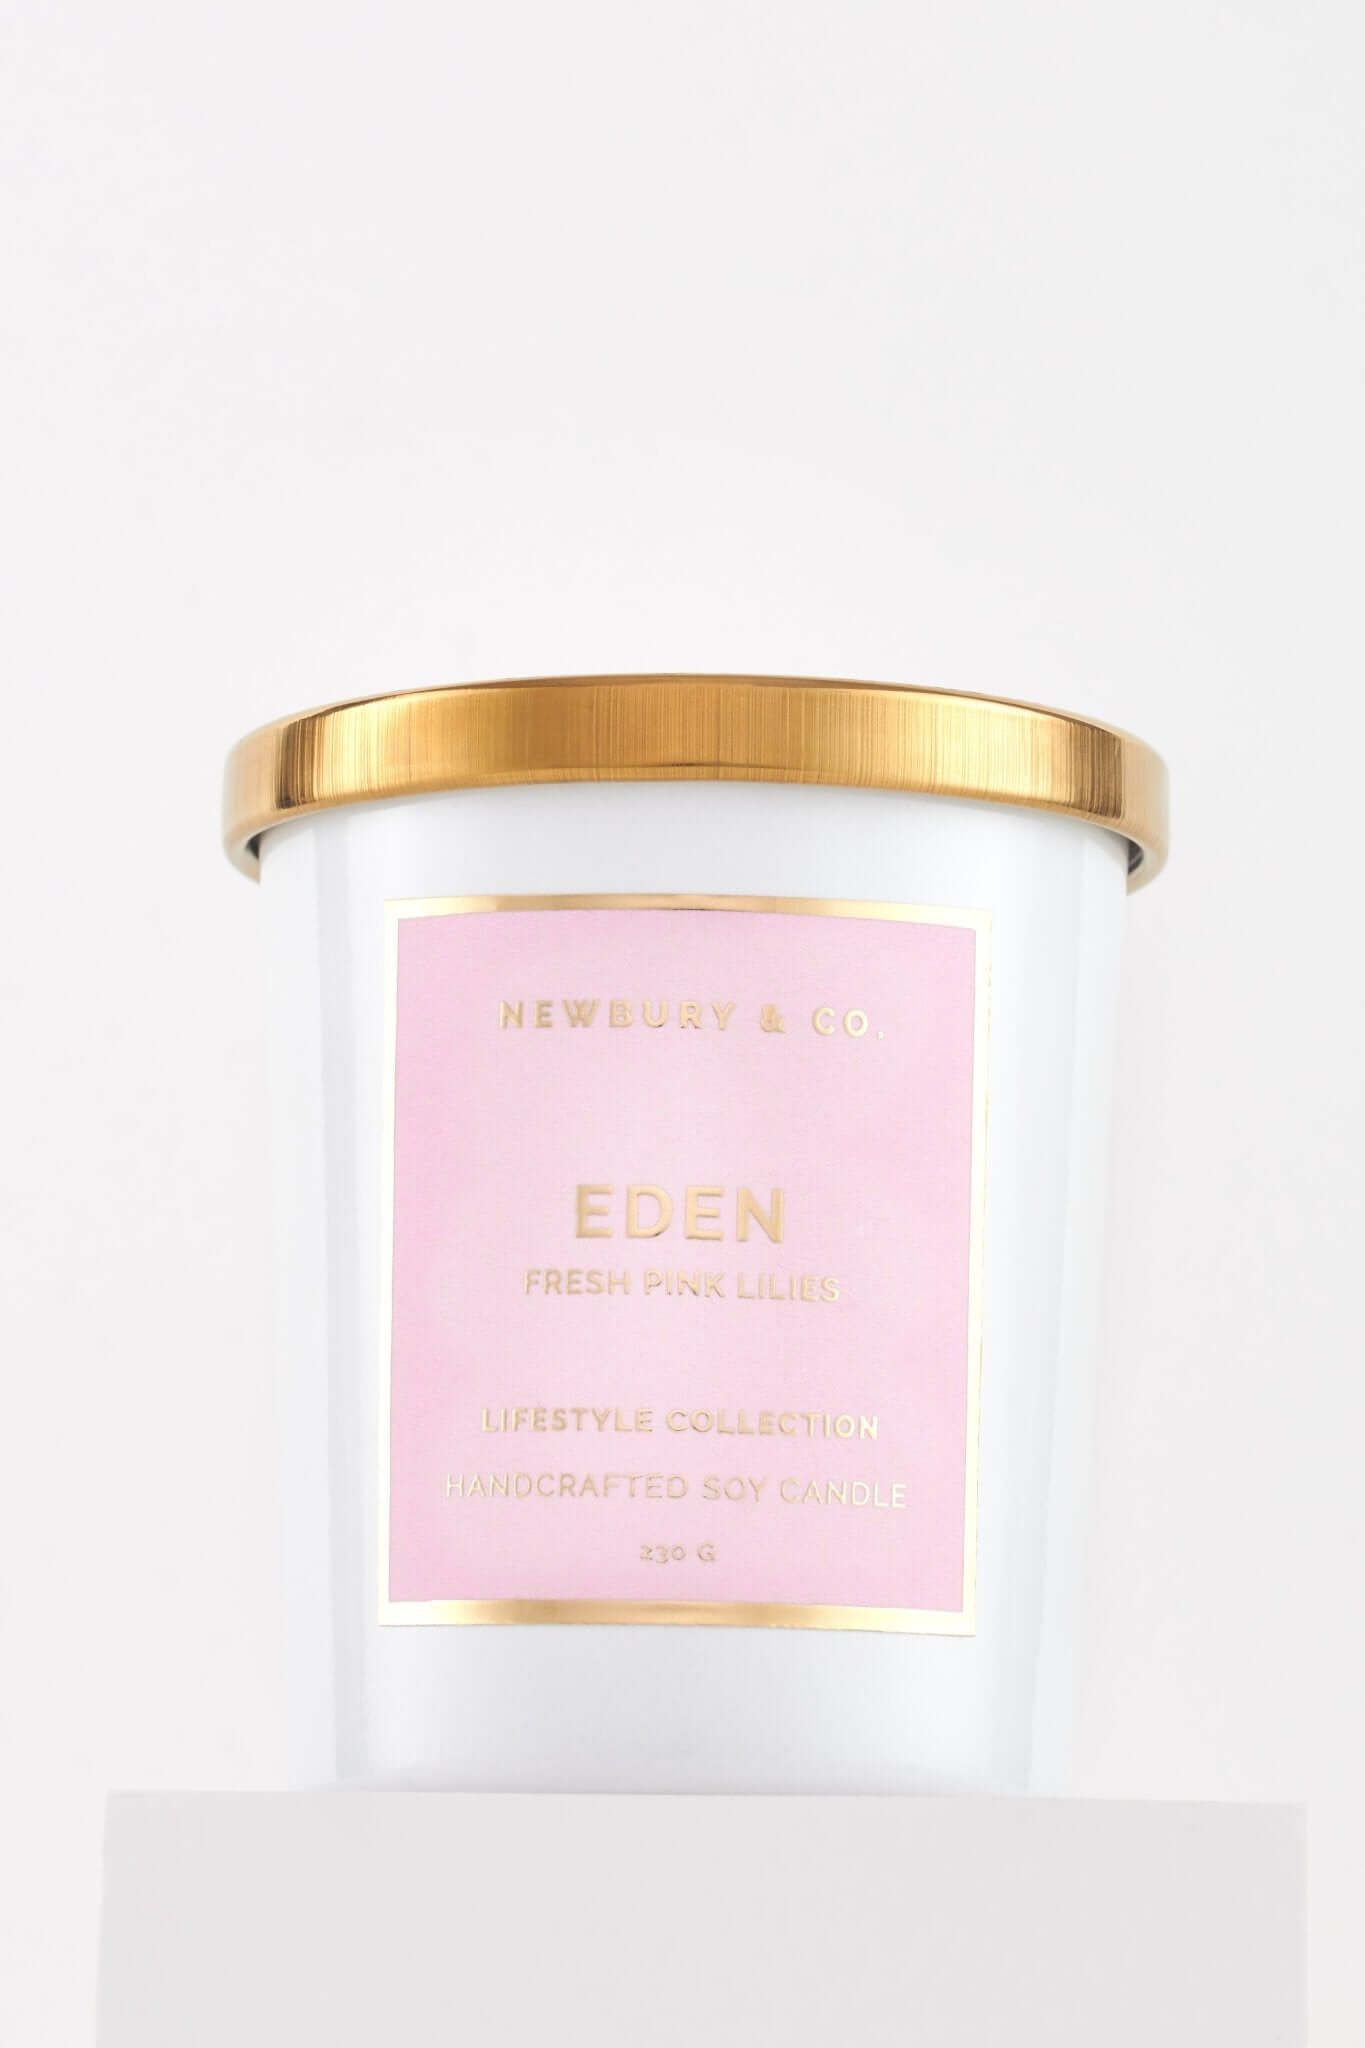 EDEN | Fresh Pink Lilies - Newbury & Co.